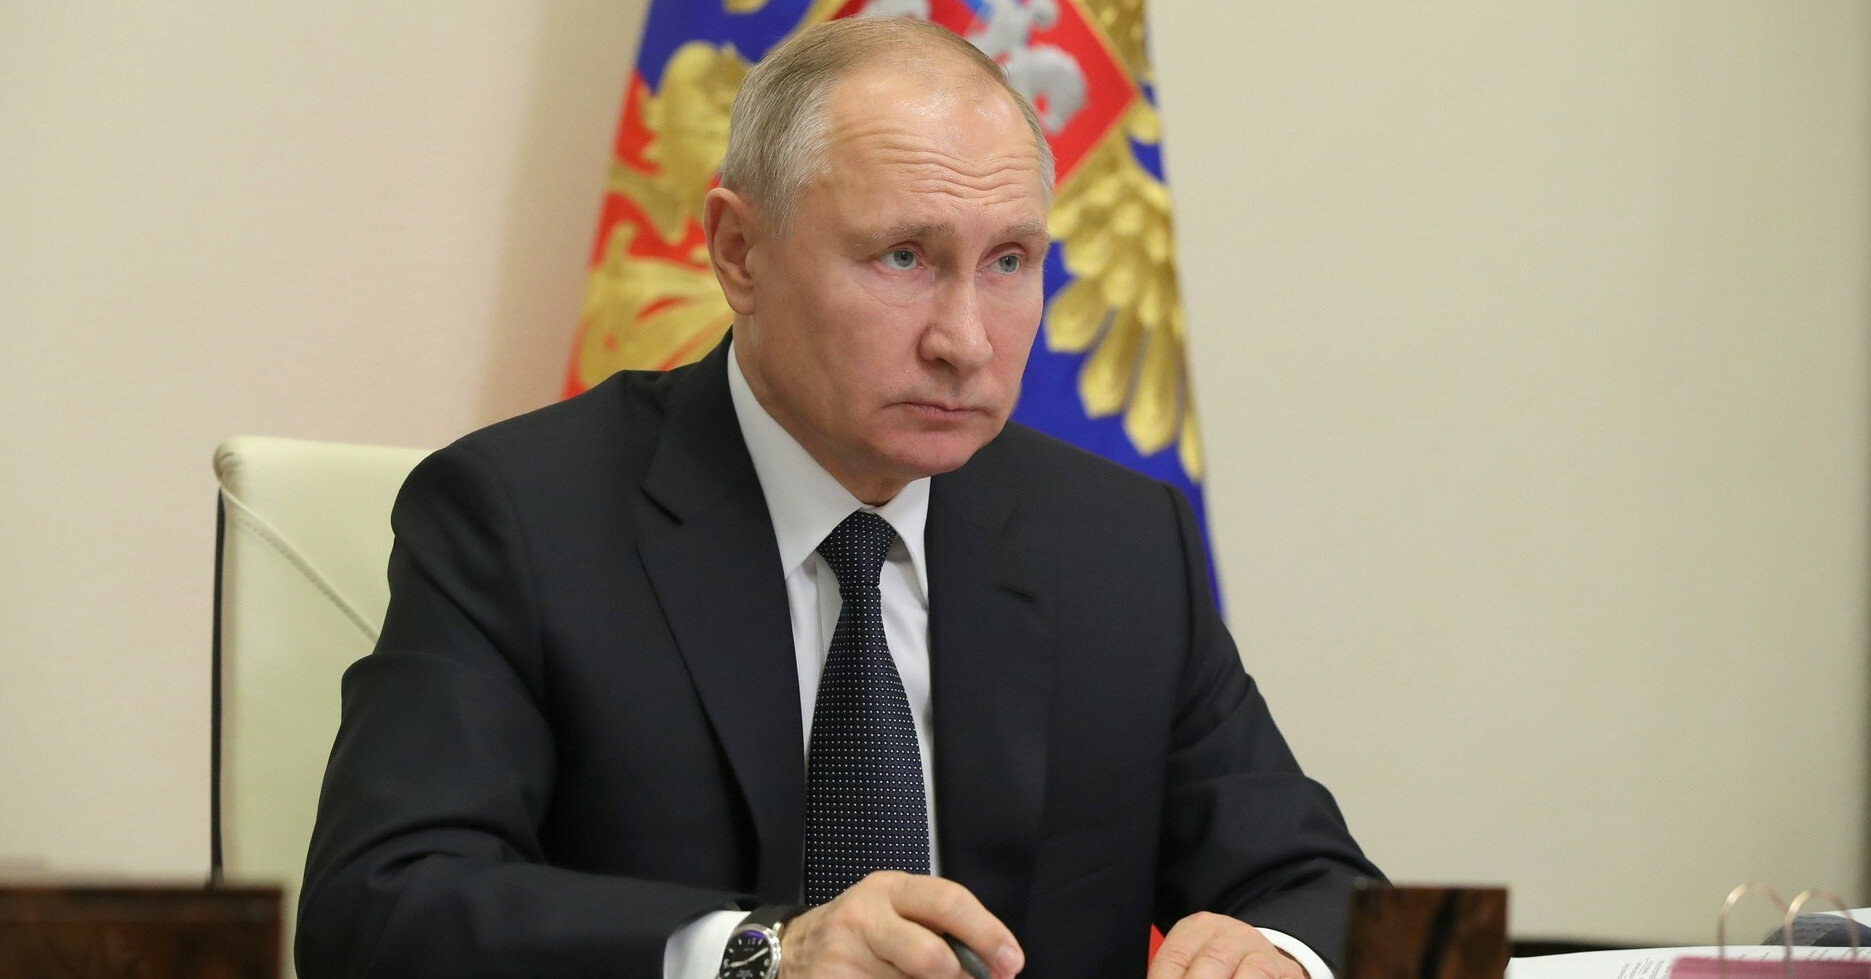 Гараж вместо дворца: Путин подал декларацию о доходах